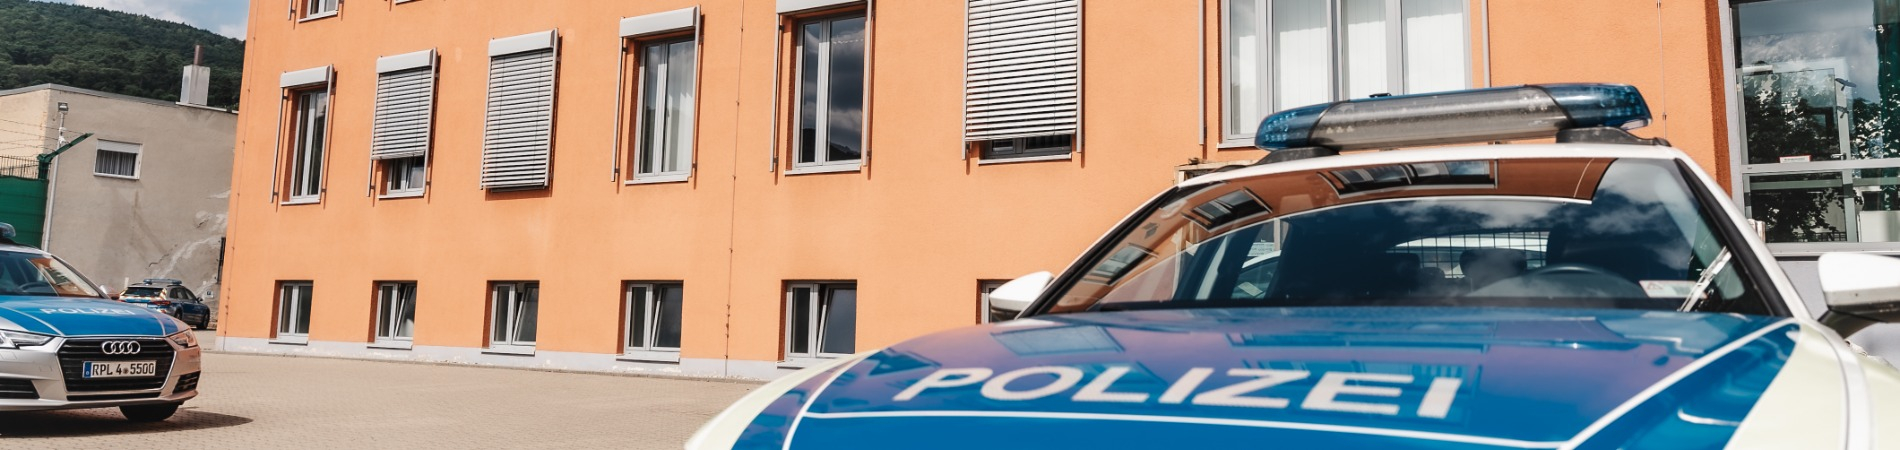 Dienstgebäude der Polizeiinspektion Neustadt an der Weinstraße